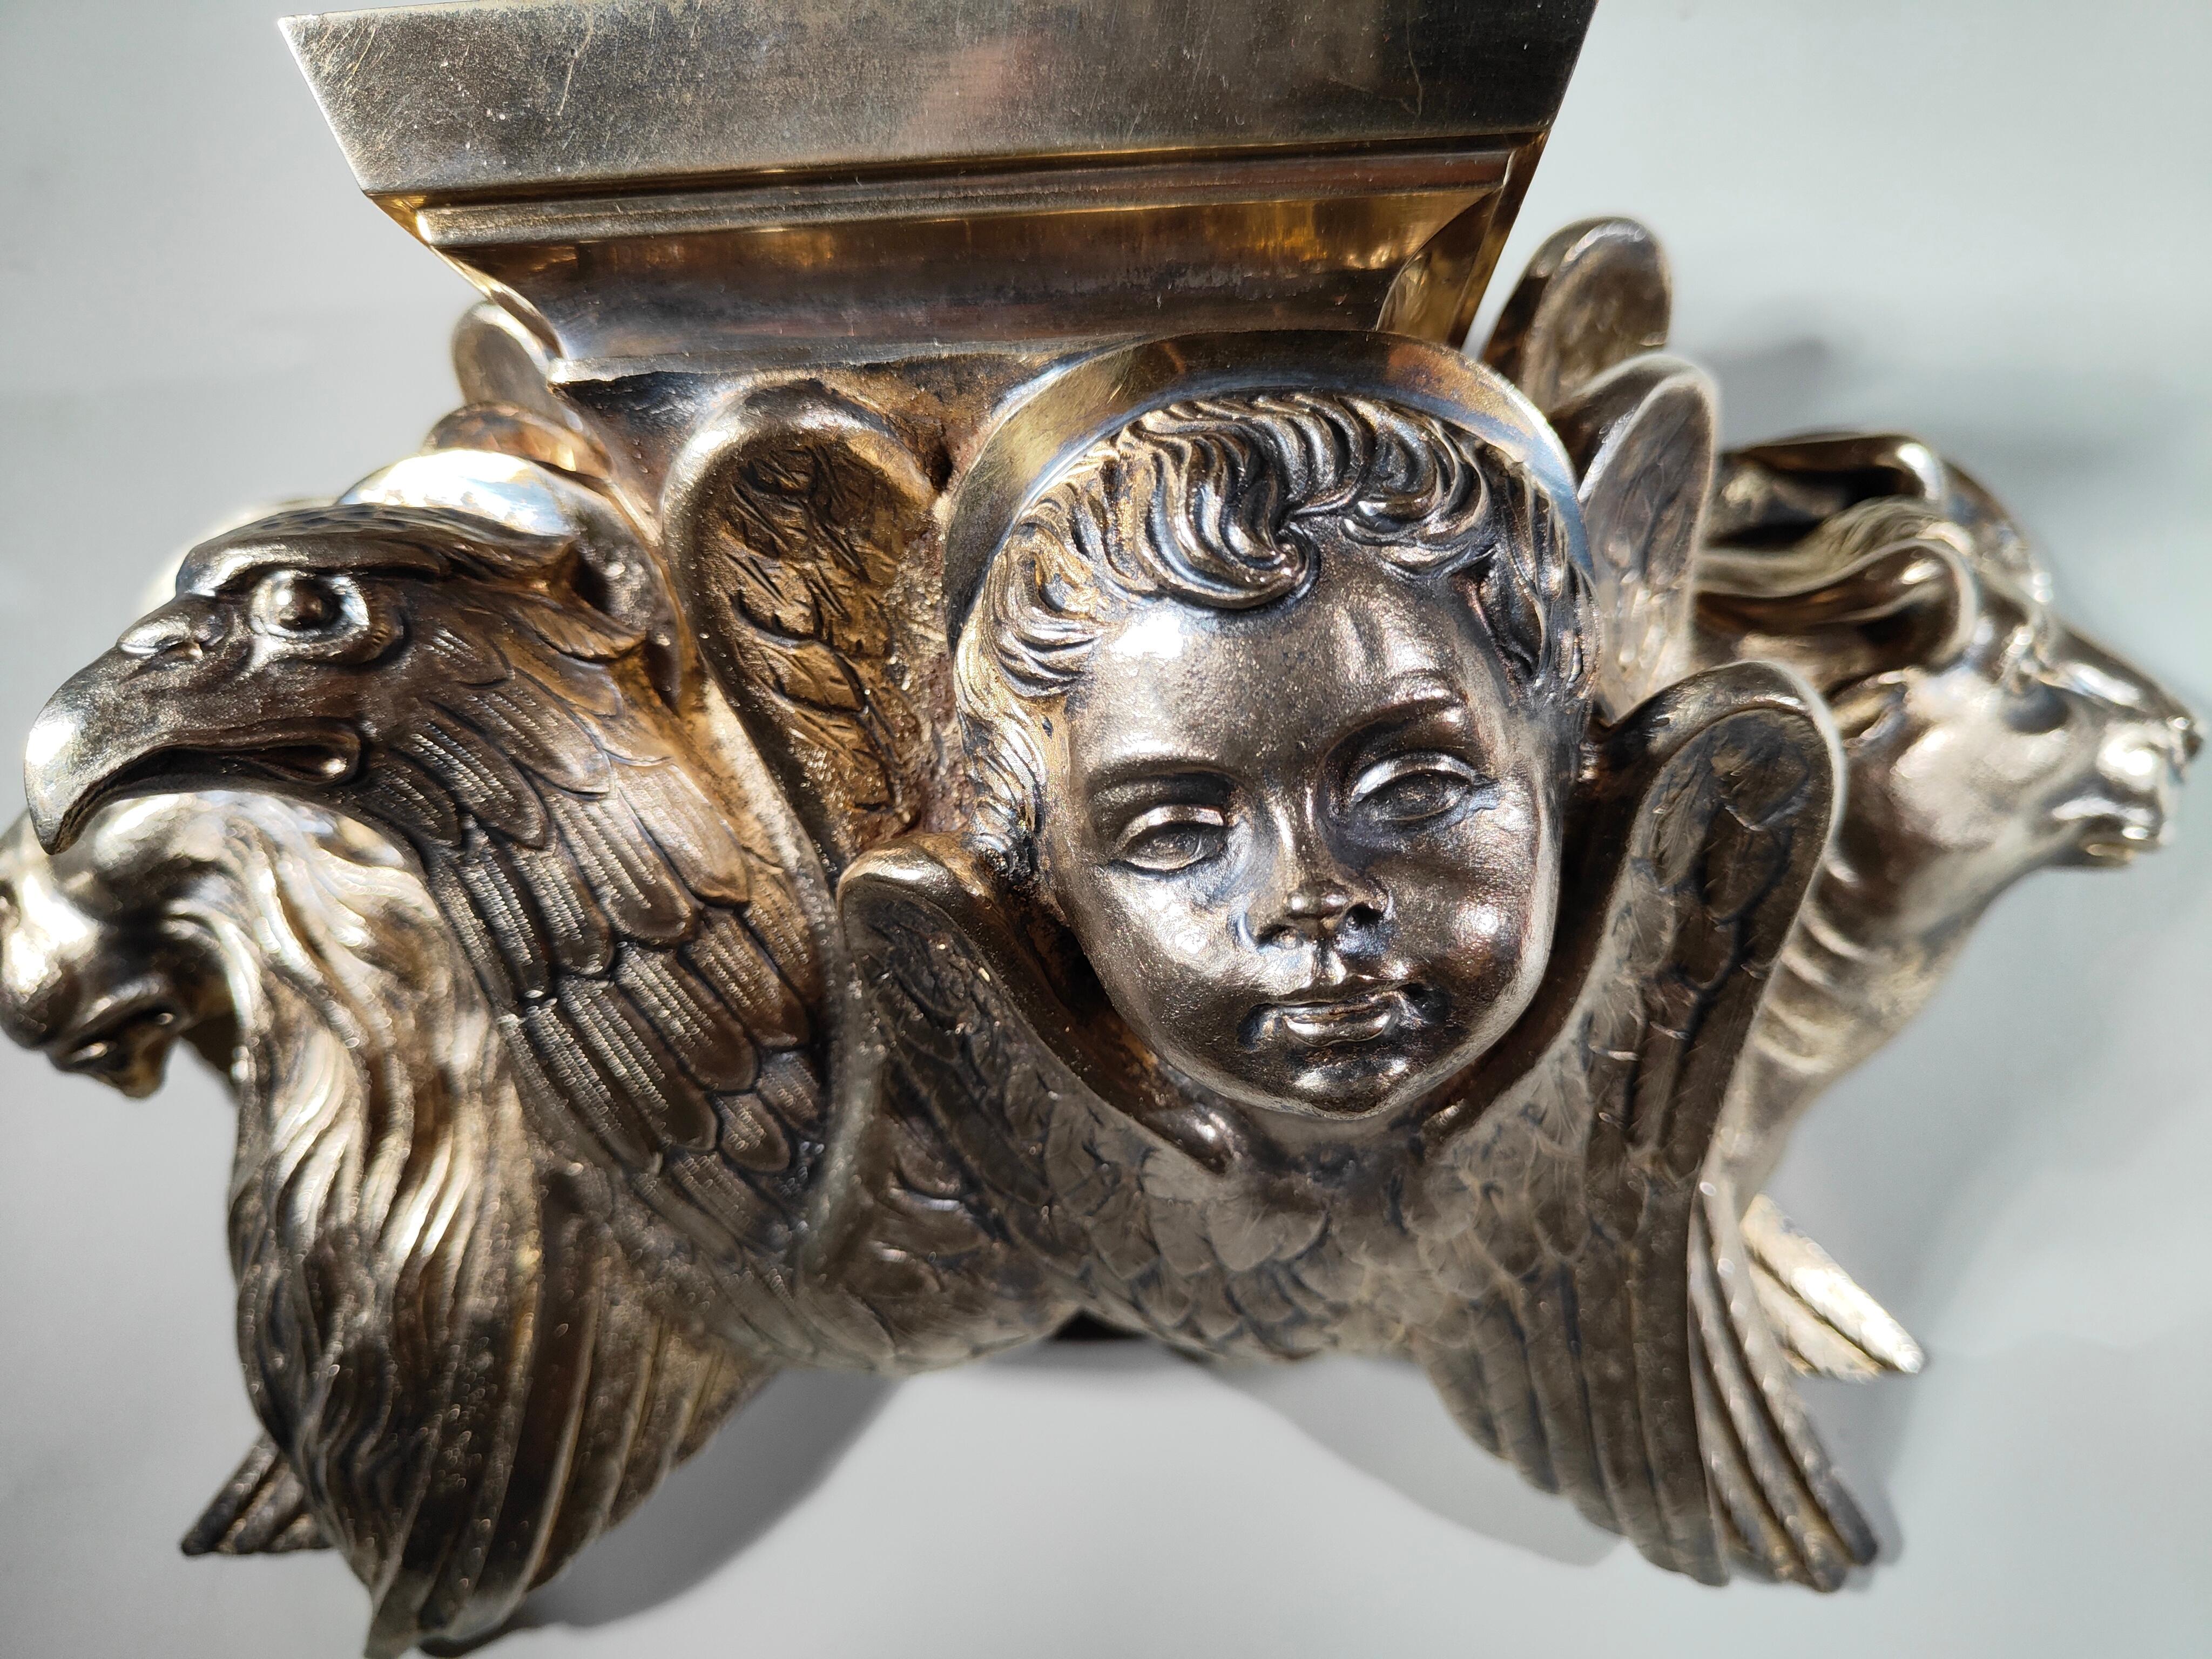 Dieser elegante, aus vergoldeter Bronze gefertigte und fein ziselierte Sockel aus dem 19. Jahrhundert ist ein Meisterwerk der Handwerkskunst seiner Zeit. Dieser 36x23x12 cm große Sockel zeugt von der sorgfältigen und raffinierten Arbeit, die für das